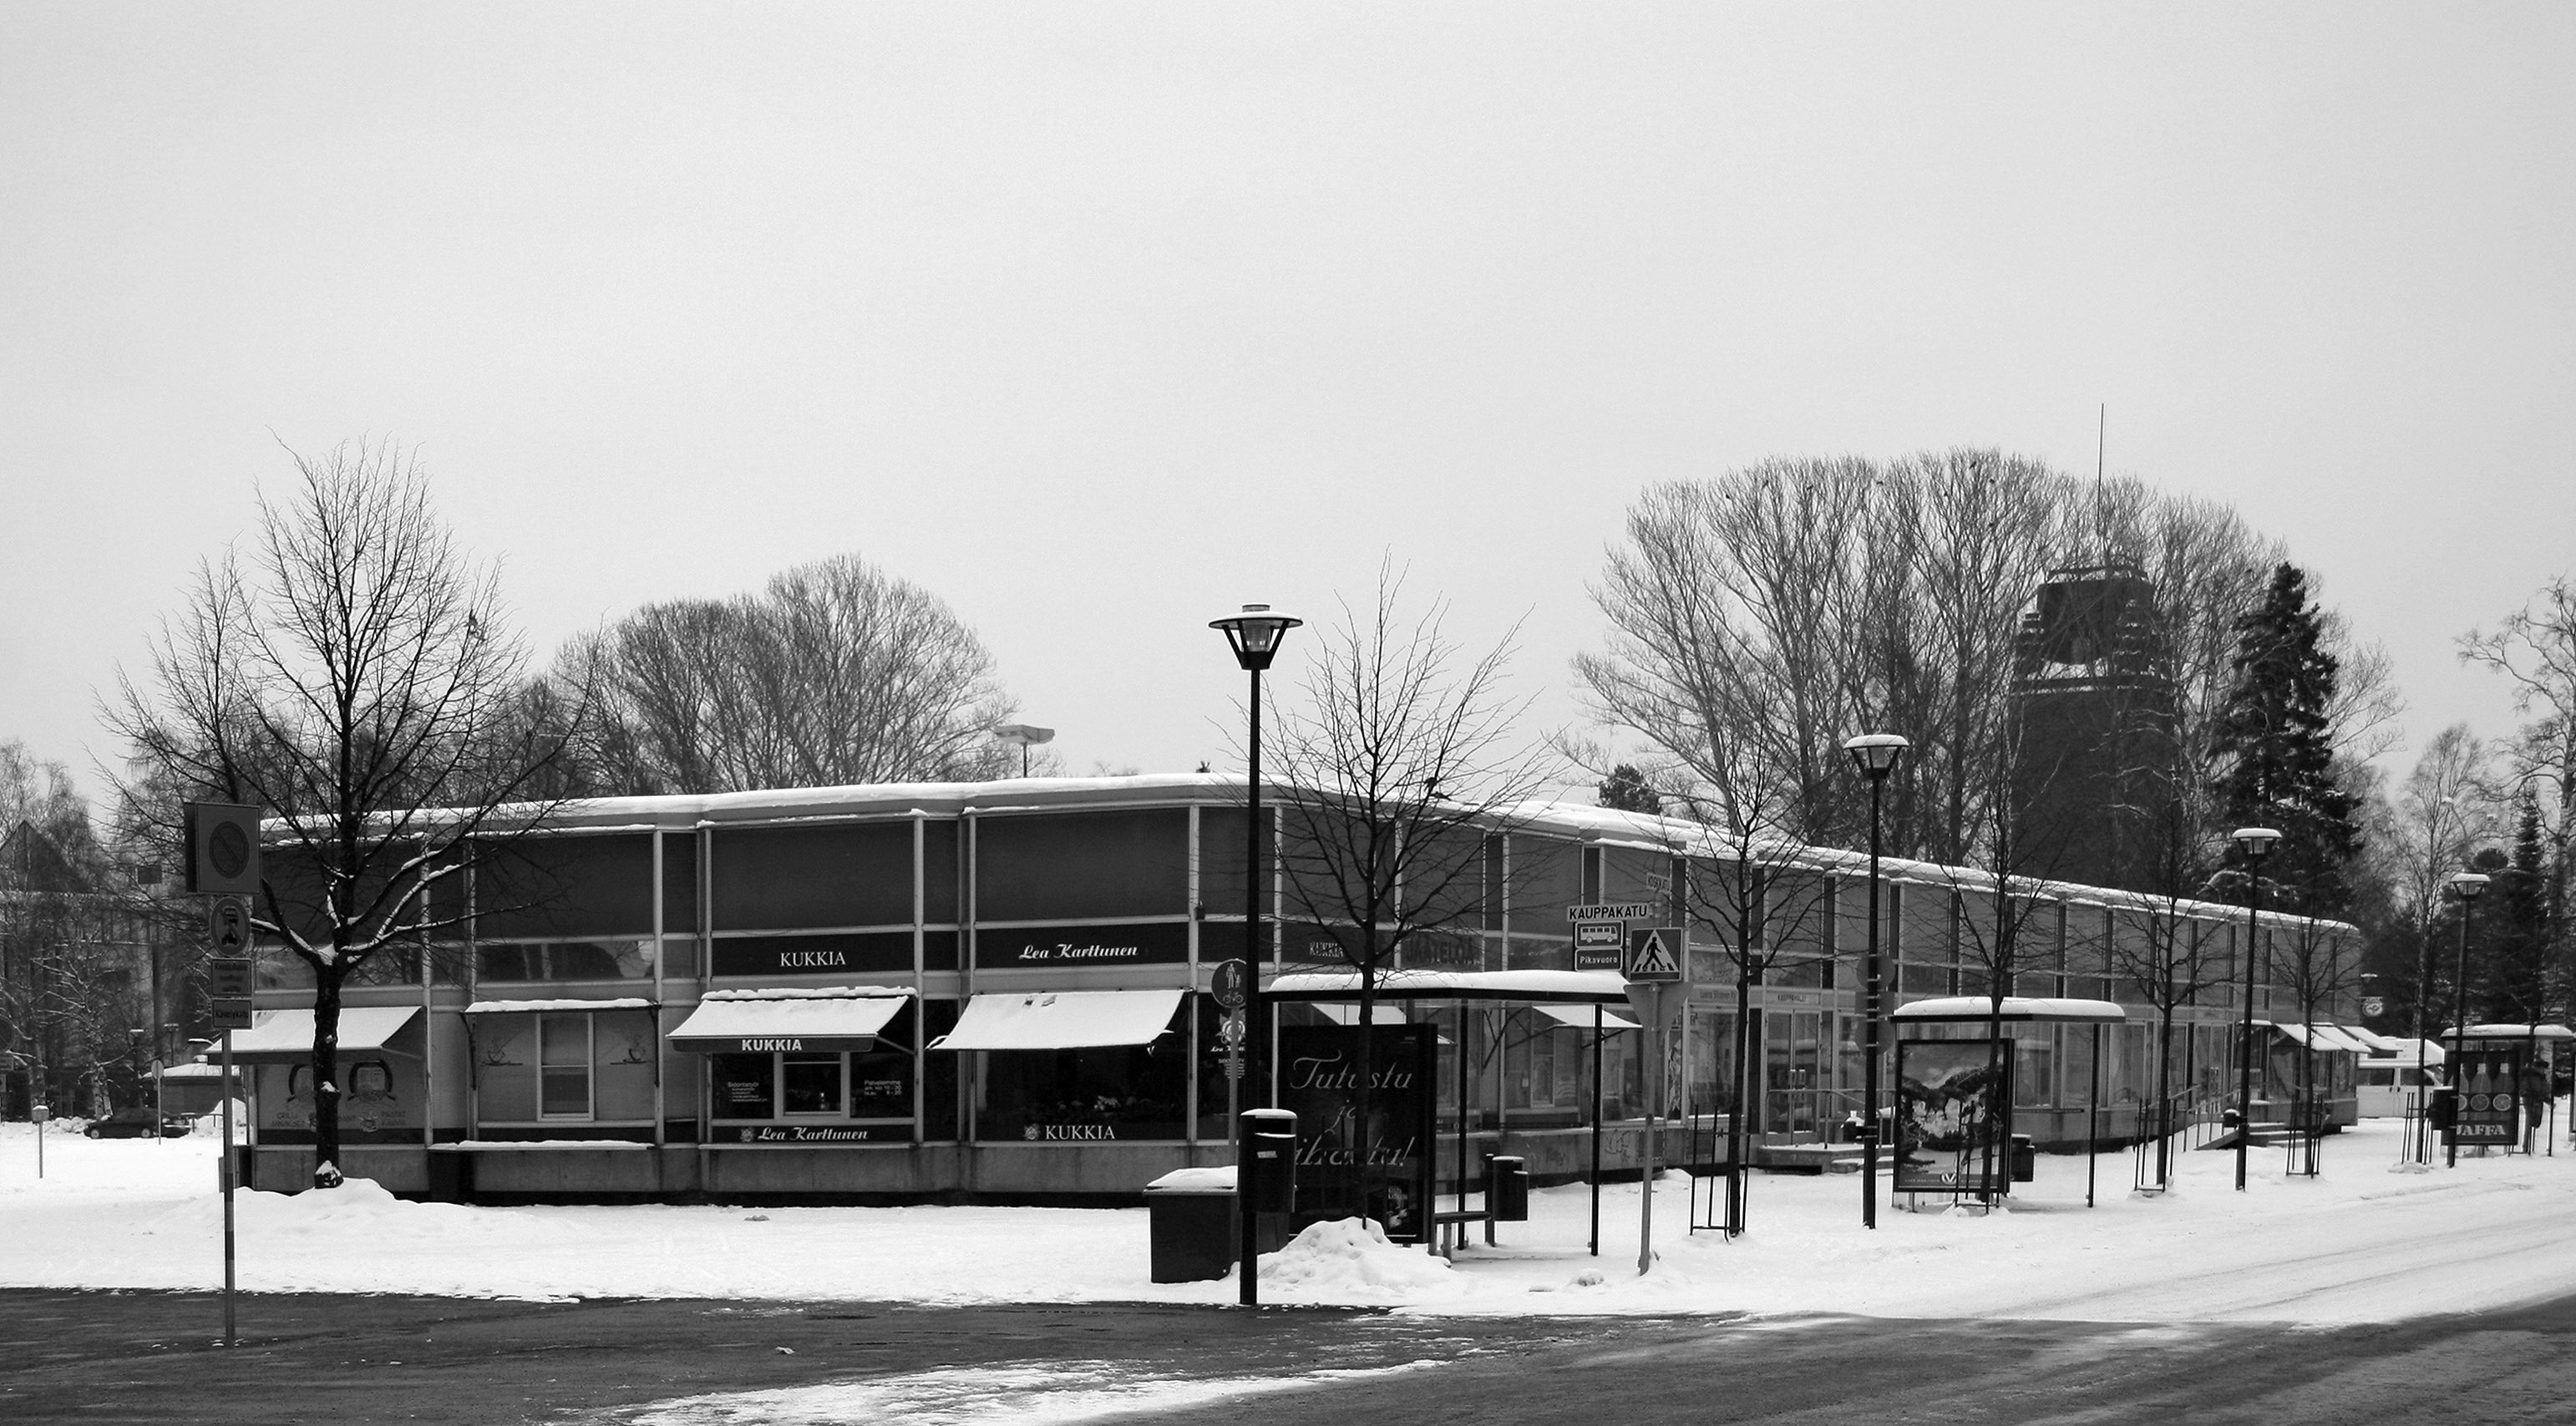 KUVA 2 Mauno Tuomiston suunnittelema kauppahalli vuonna 2009. kuva: pekka piiparinen vetosi kannanotossaan juuri vanhan puisen hallin purkuprosessiin.